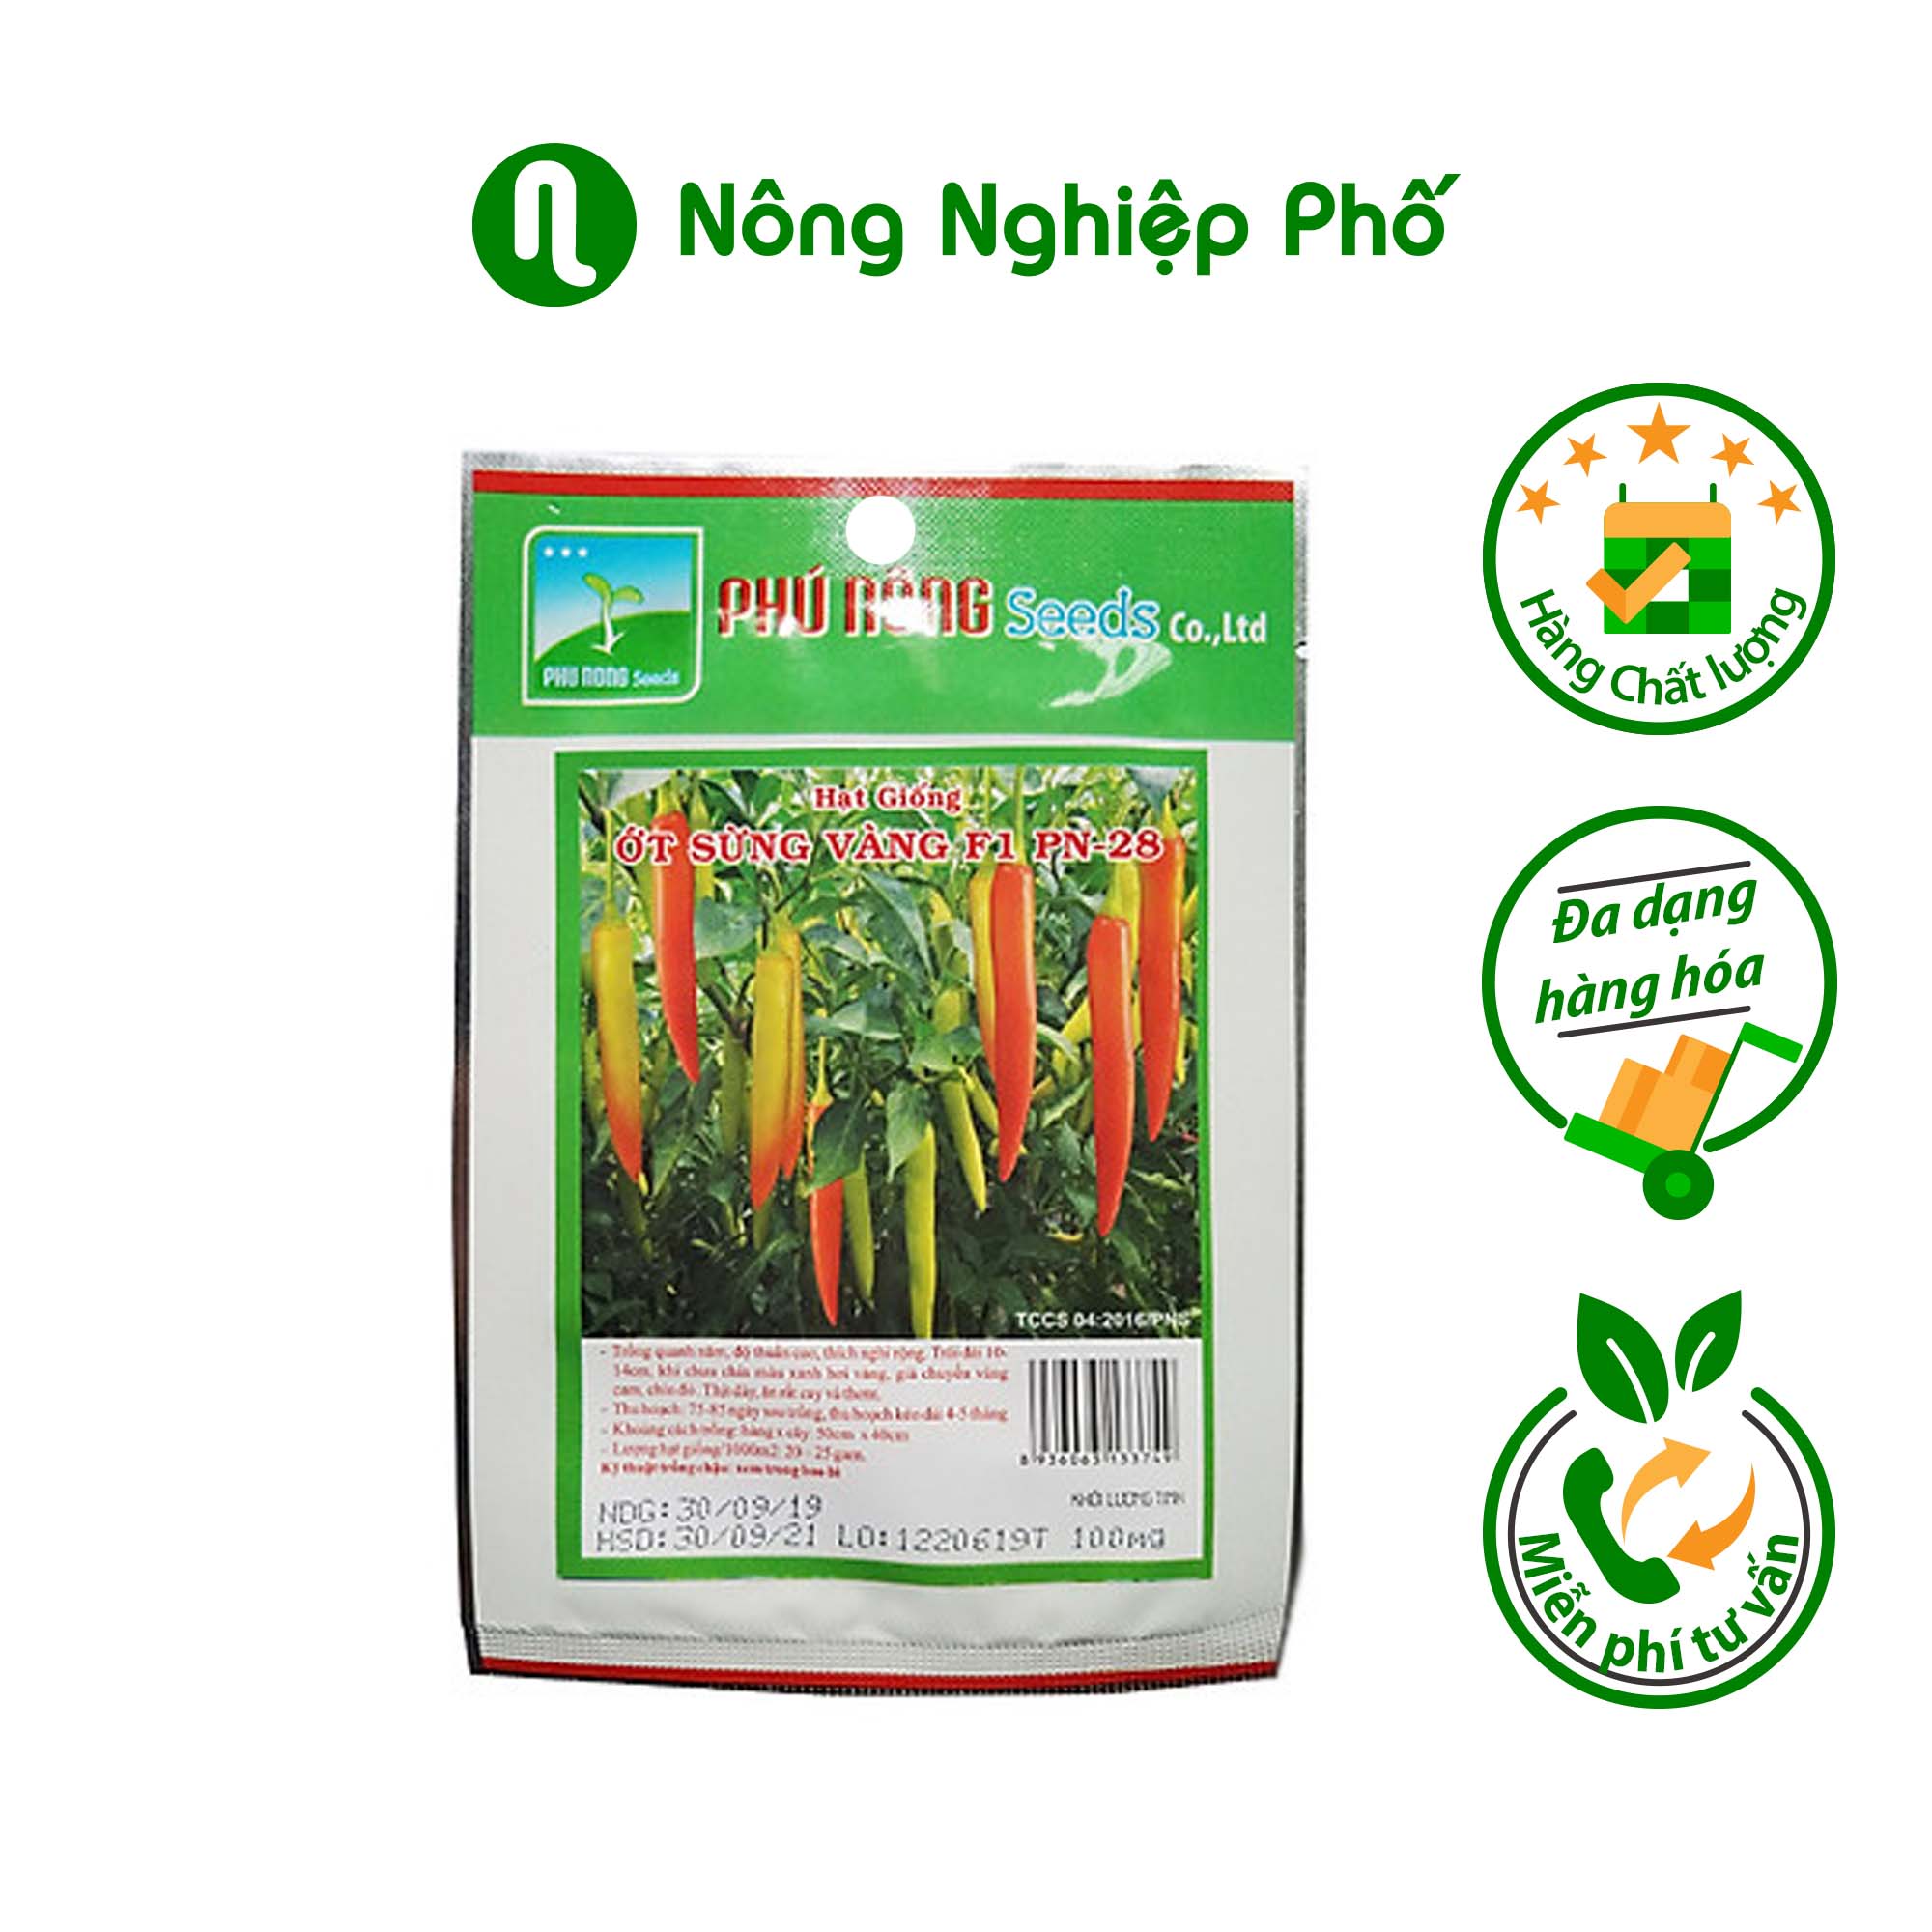 Hạt giống ớt sừng vàng F1 PN-28 (100mg/gói) Phú Nông